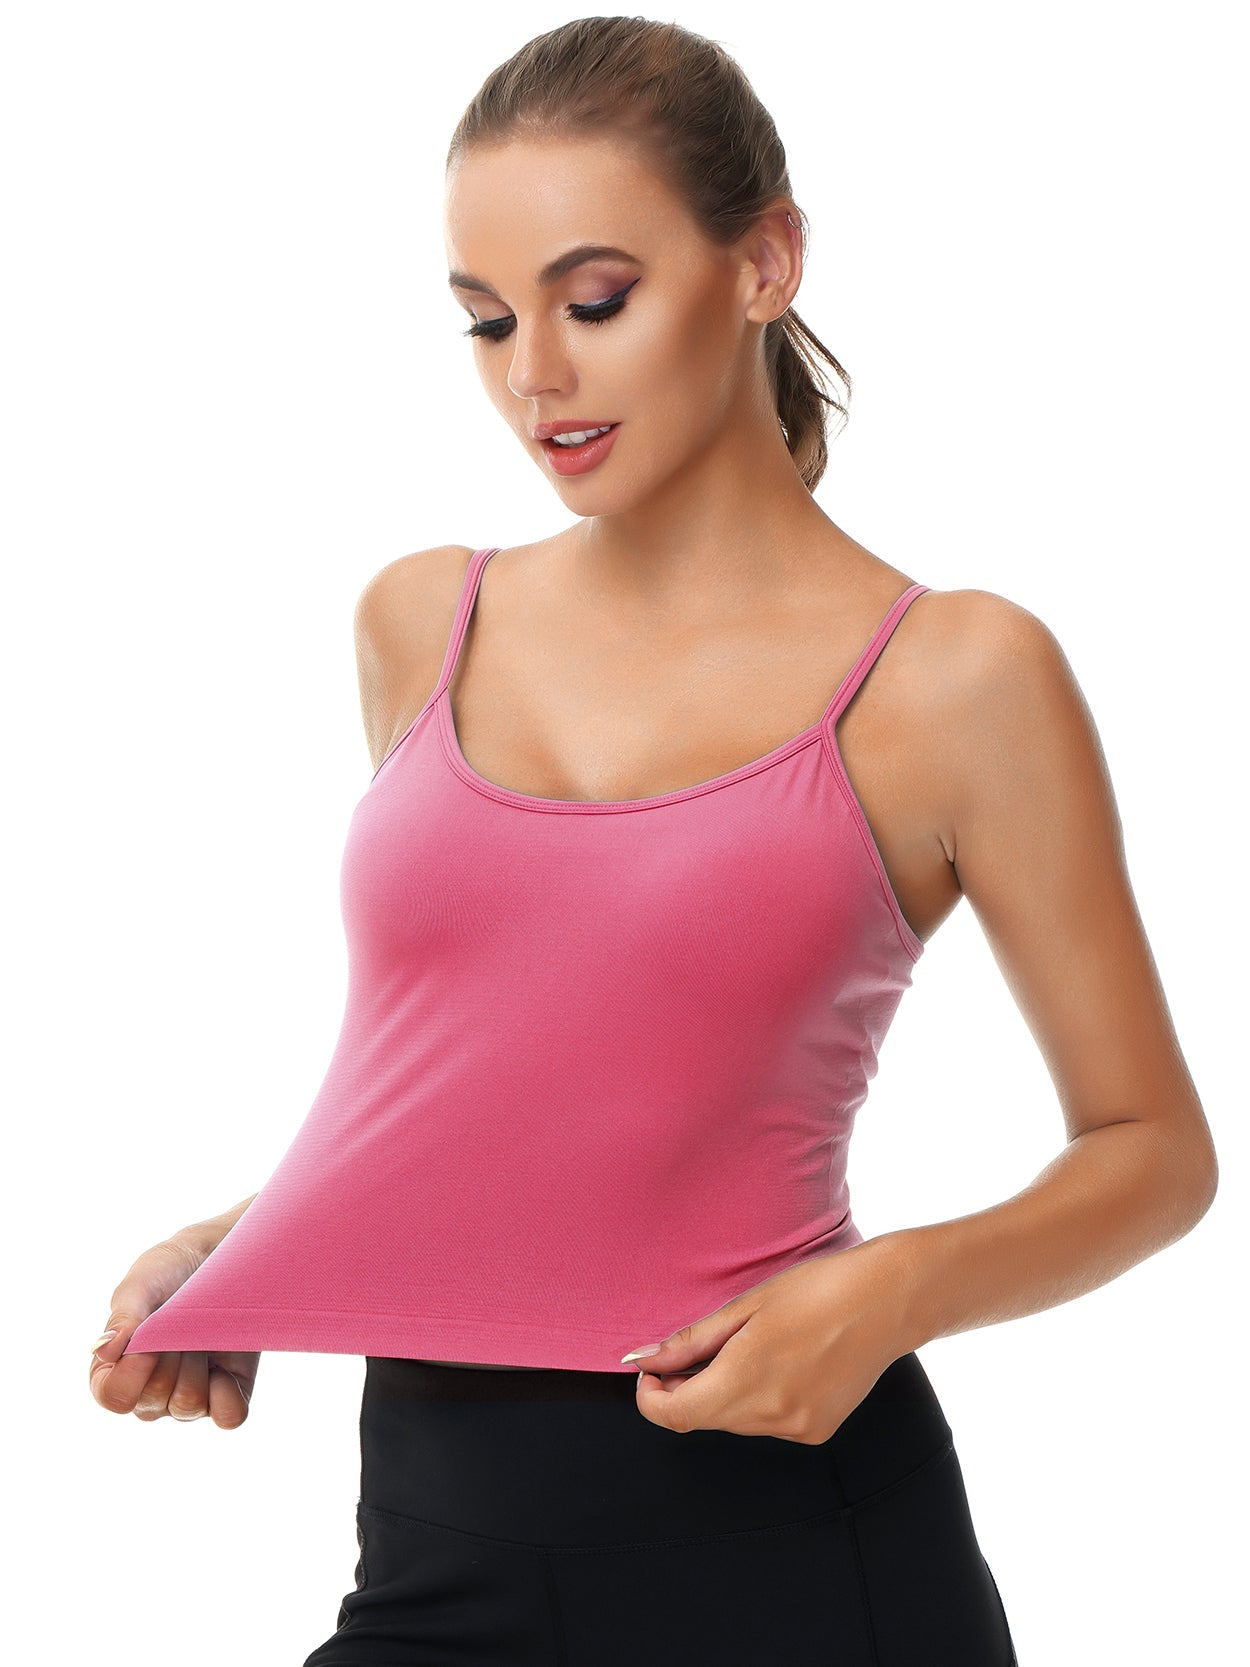 Pullover  Camisole Removeble Pad Adjustable Strap Yoga Bra